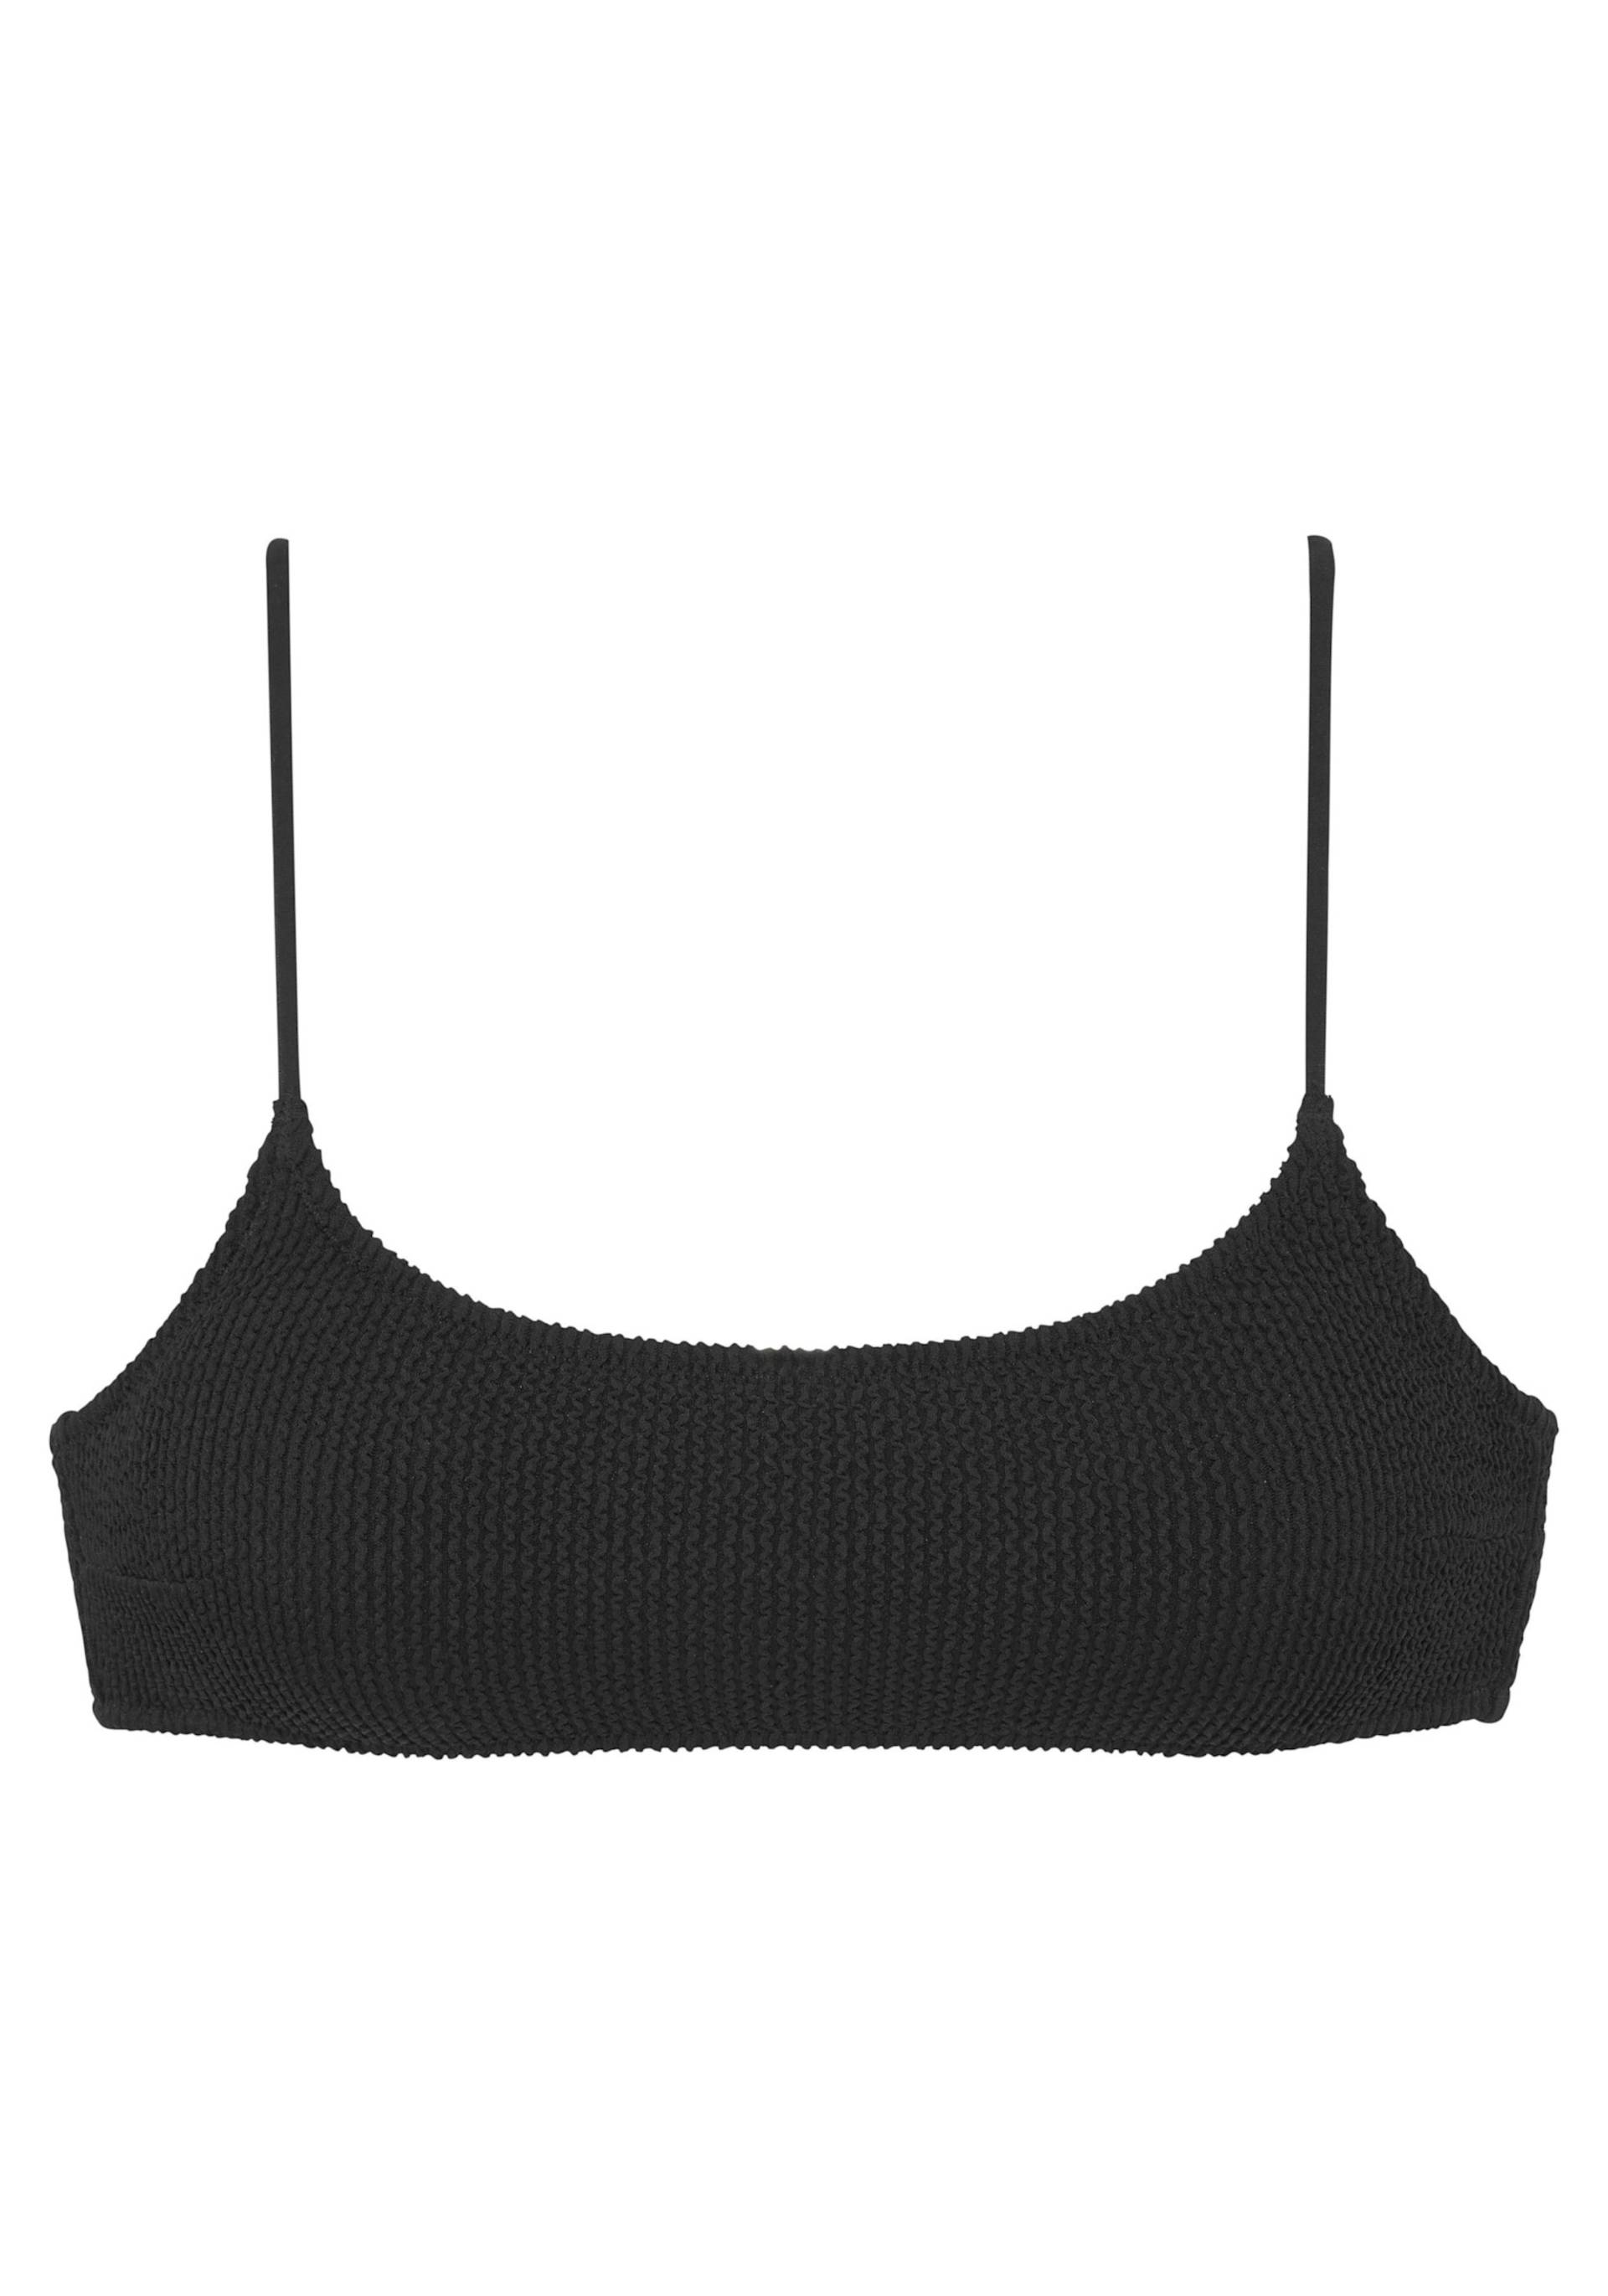 Bustier-Bikini-Top in schwarz von Vivance